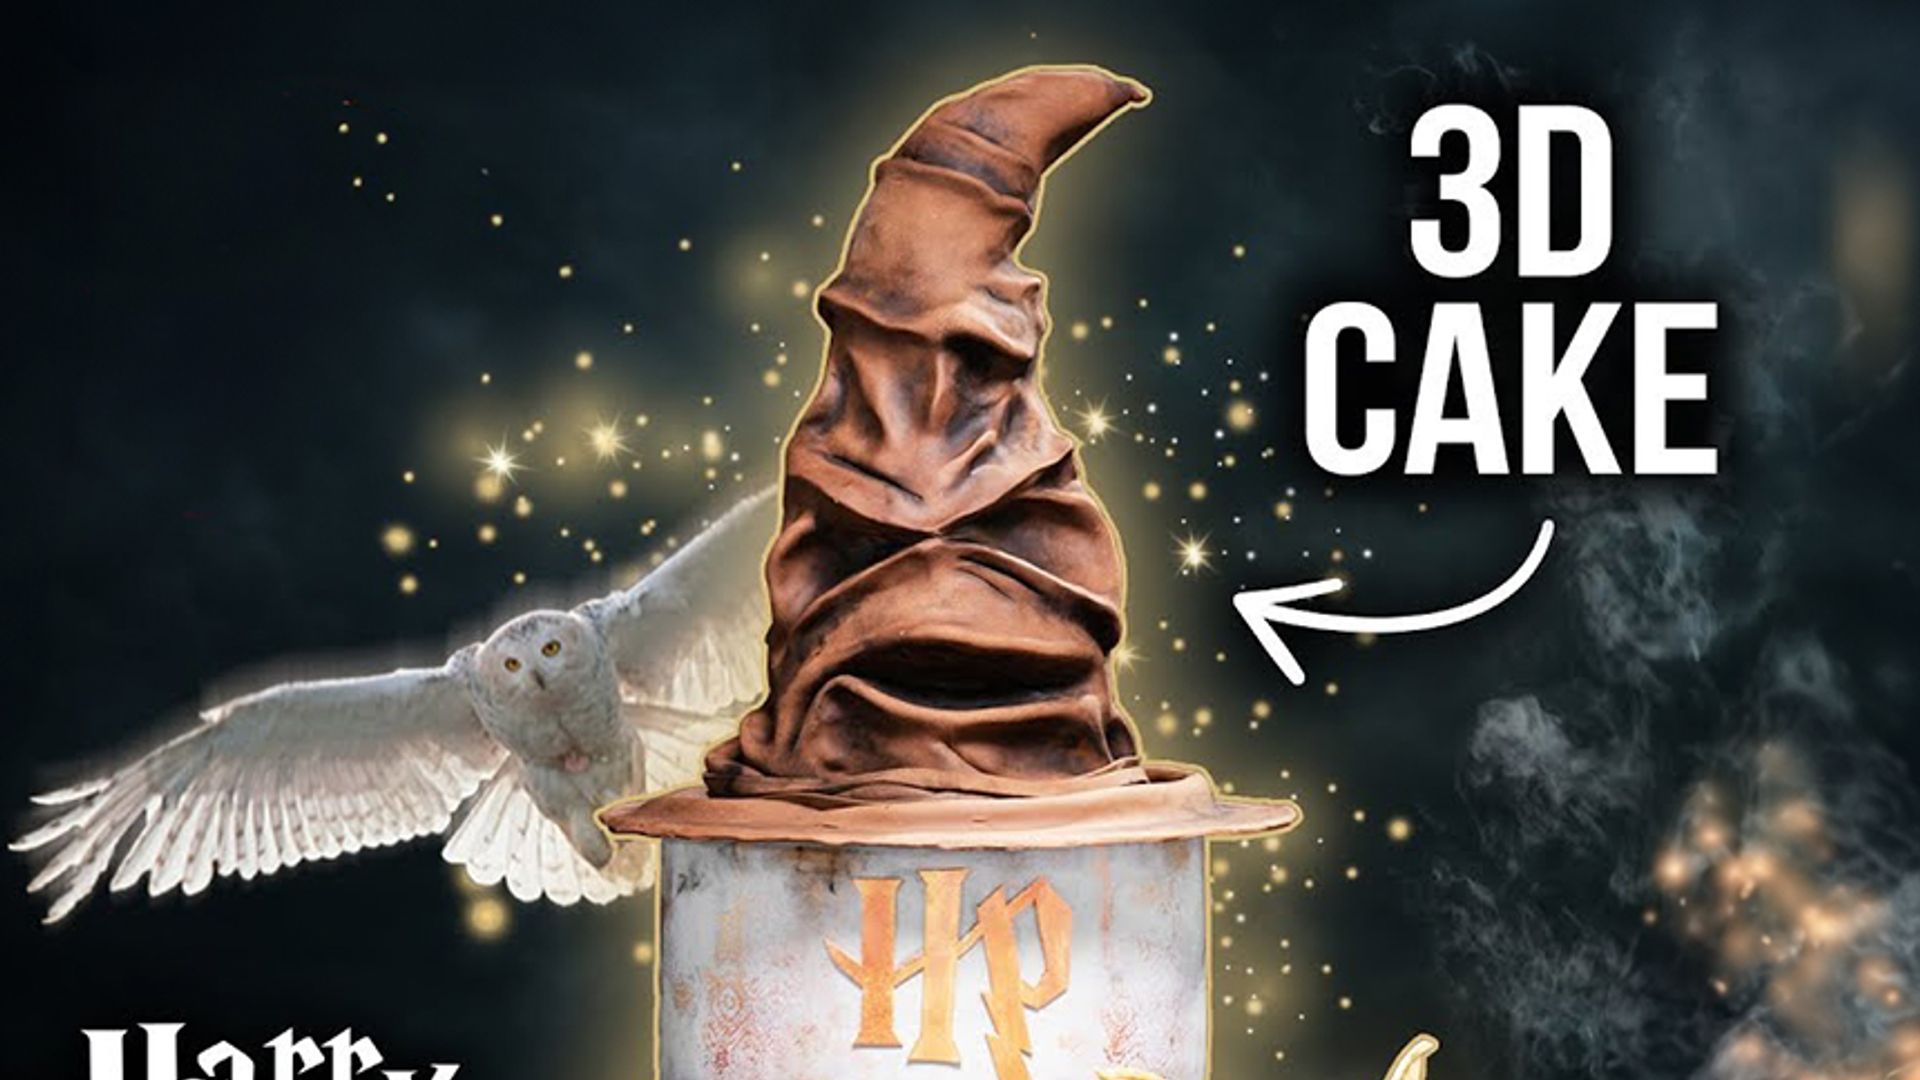 Harry Potter XXL Cake 3D / Motivtorte / Sallys Welt